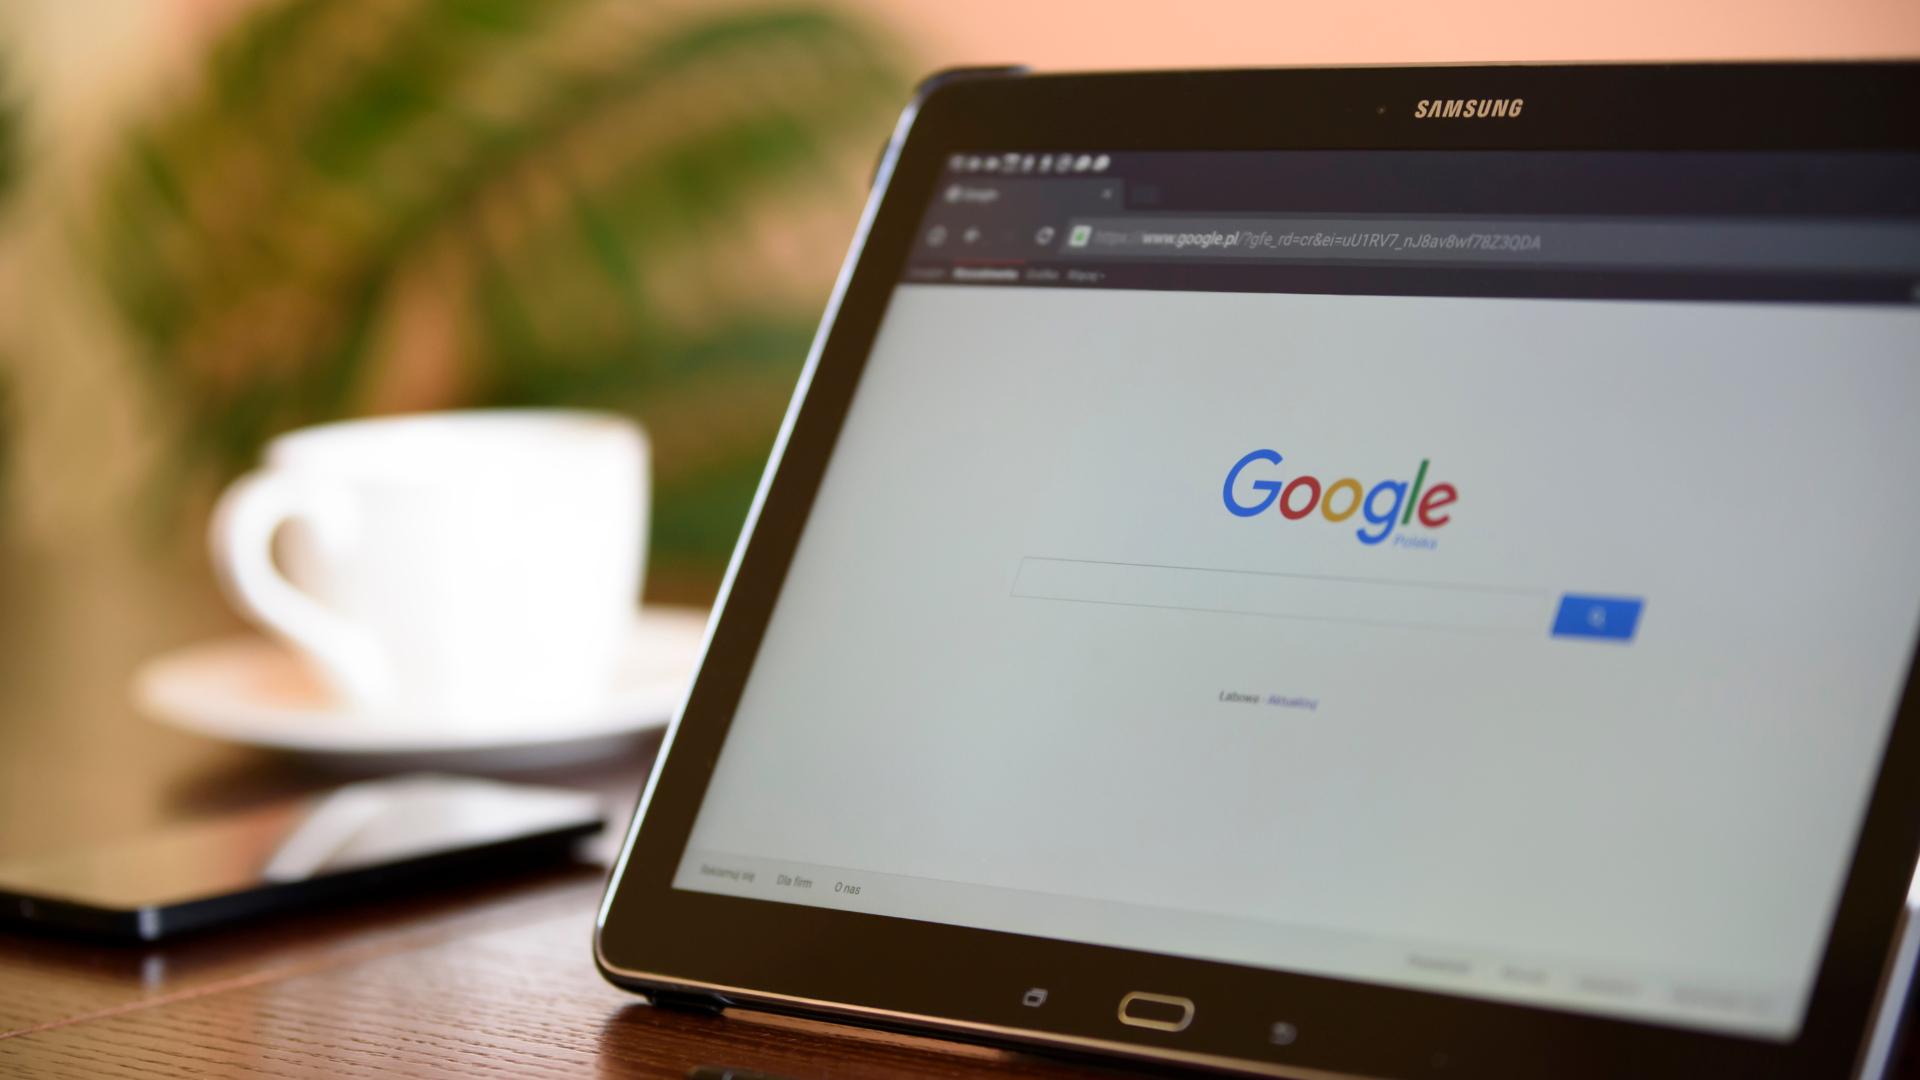 Die Google-Startseite wurde auf einem Samsung-Tablet geöffnet